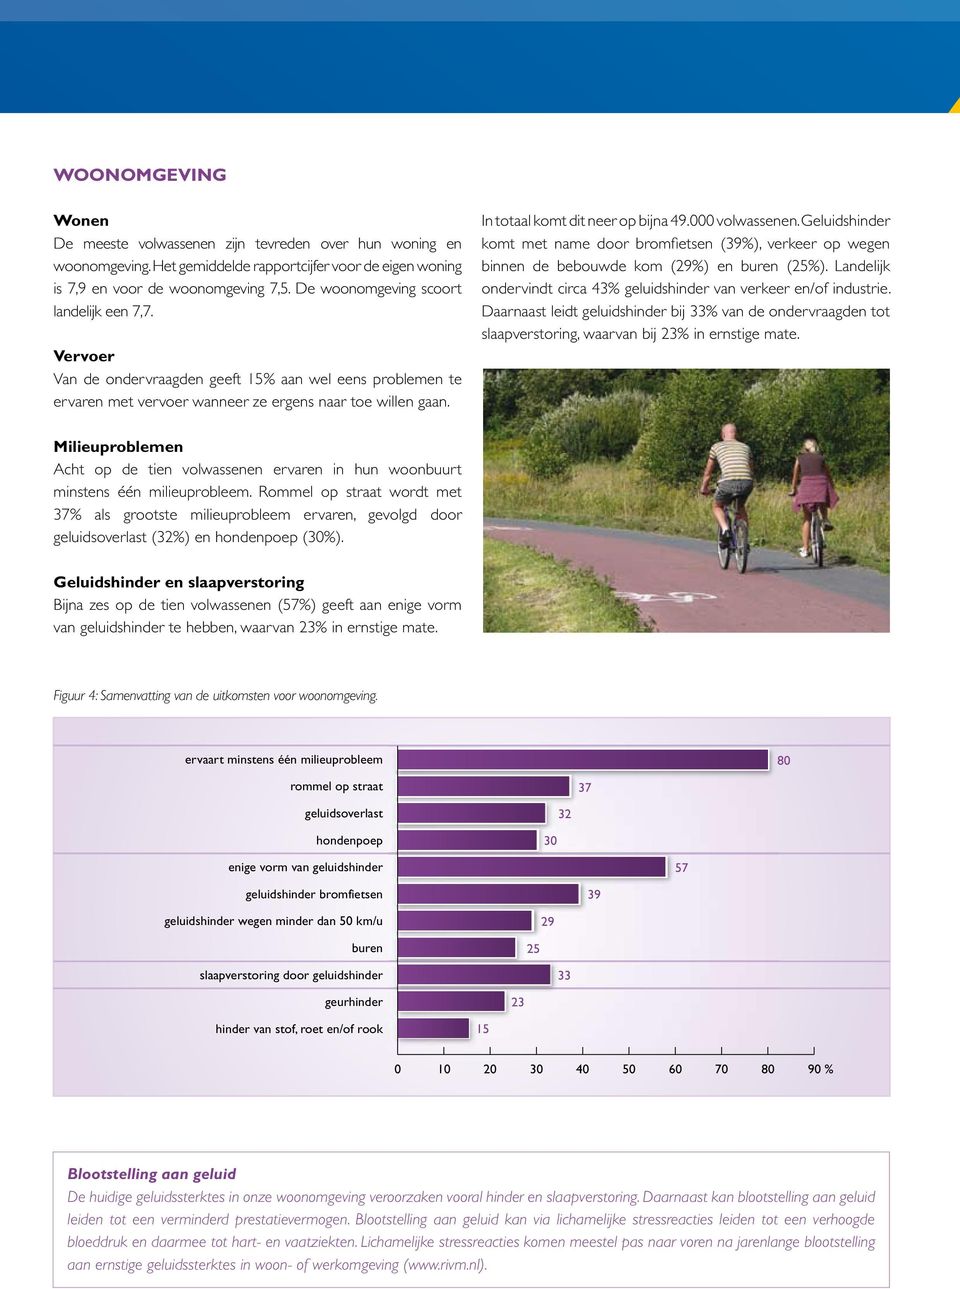 Geluidshinder komt met name door bromfietsen (3%), verkeer op wegen binnen de bebouwde kom (2%) en buren (25%). Landelijk ondervindt circa 43% geluidshinder van verkeer en/of industrie.